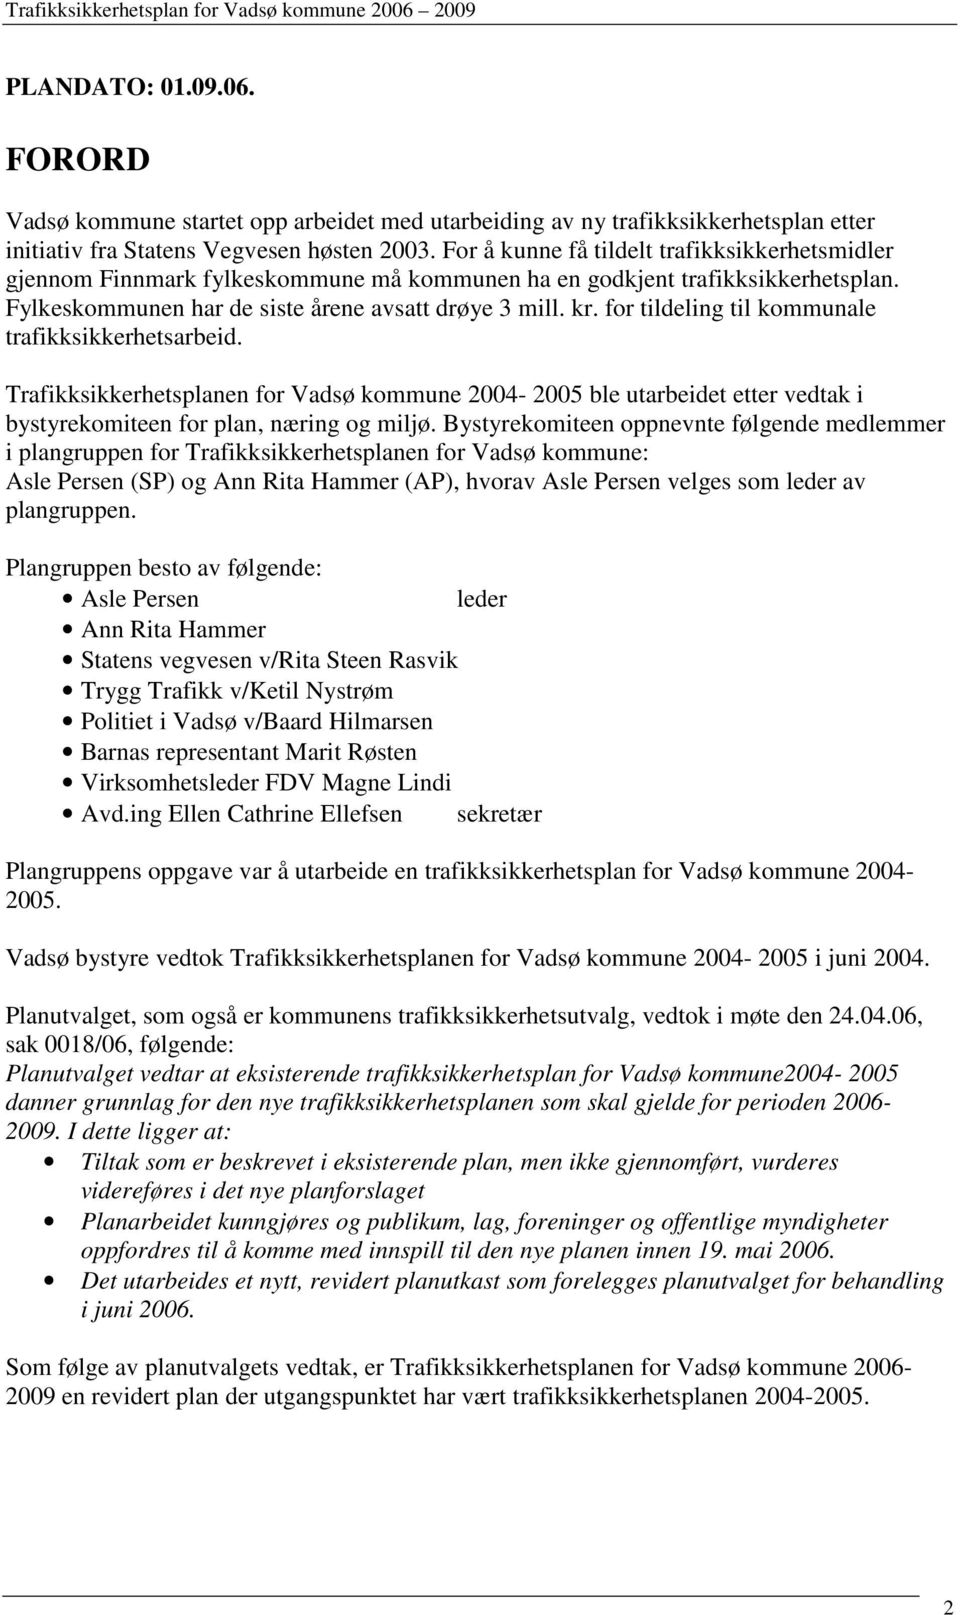 for tildeling til kommunale trafikksikkerhetsarbeid. Trafikksikkerhetsplanen for Vadsø kommune 2004-2005 ble utarbeidet etter vedtak i bystyrekomiteen for plan, næring og miljø.